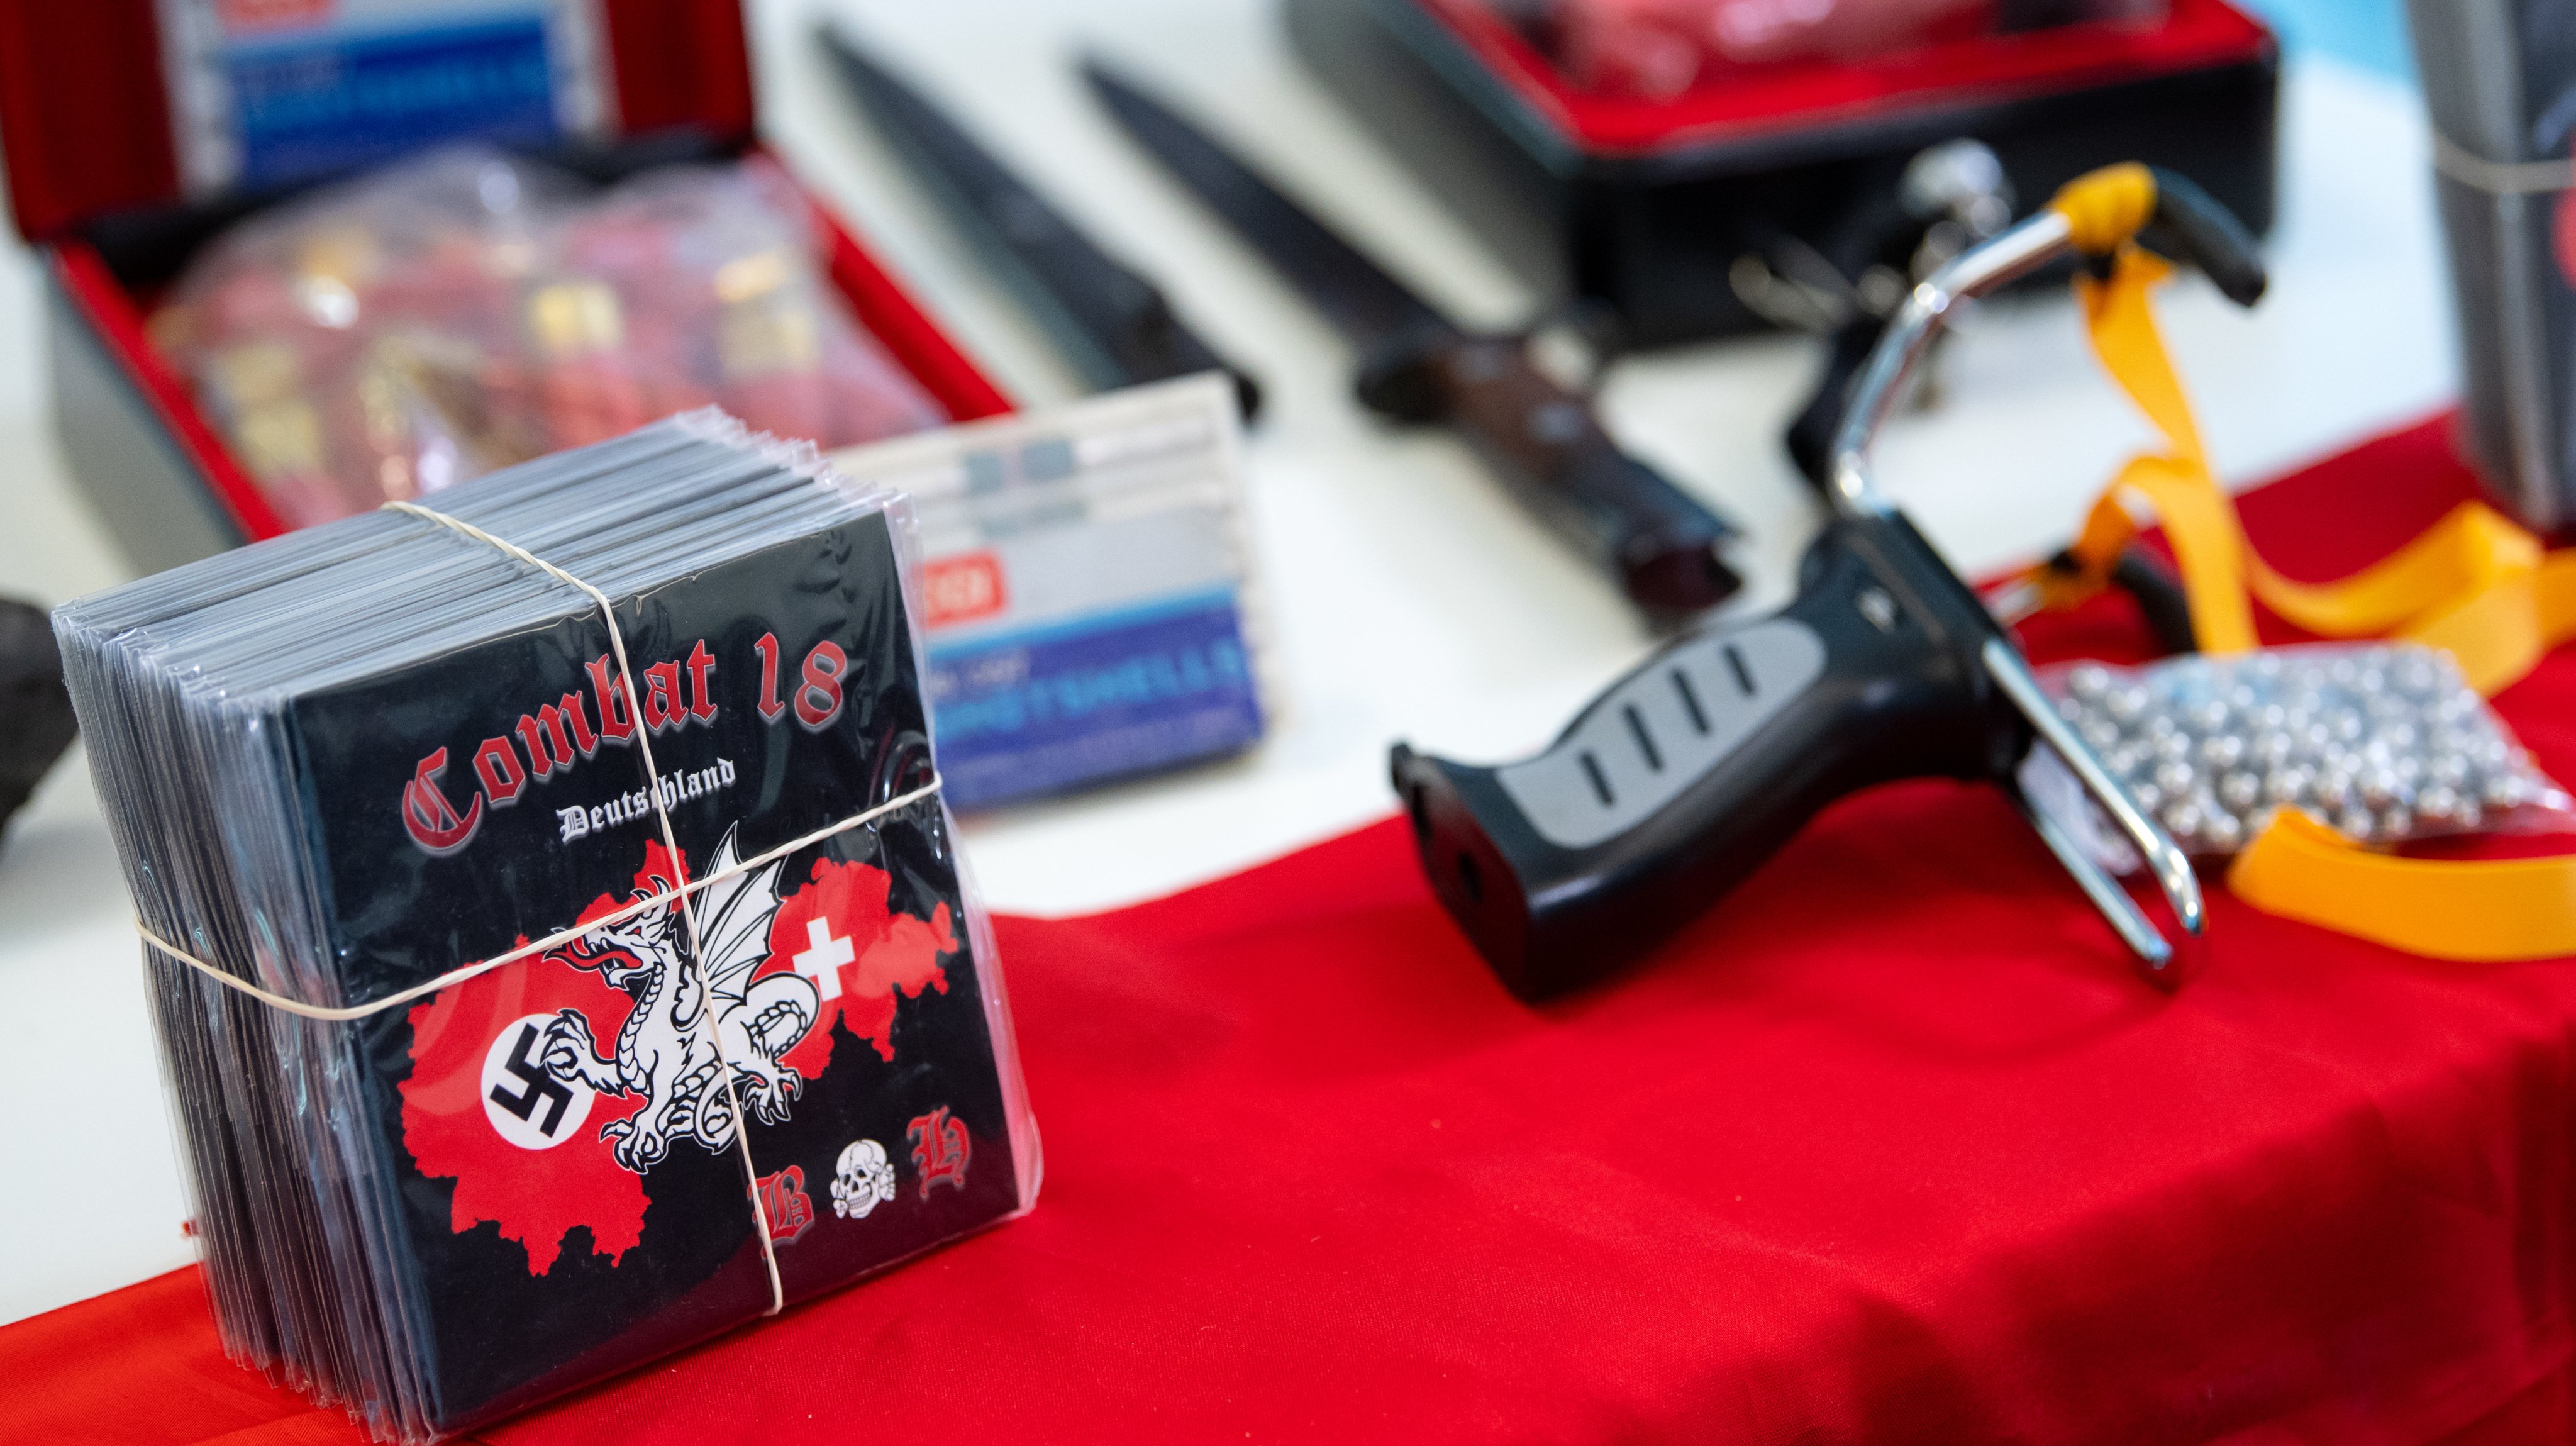 Armas, munições e CDs confiscados a membros de grupos de extrema-direita na Alemanha